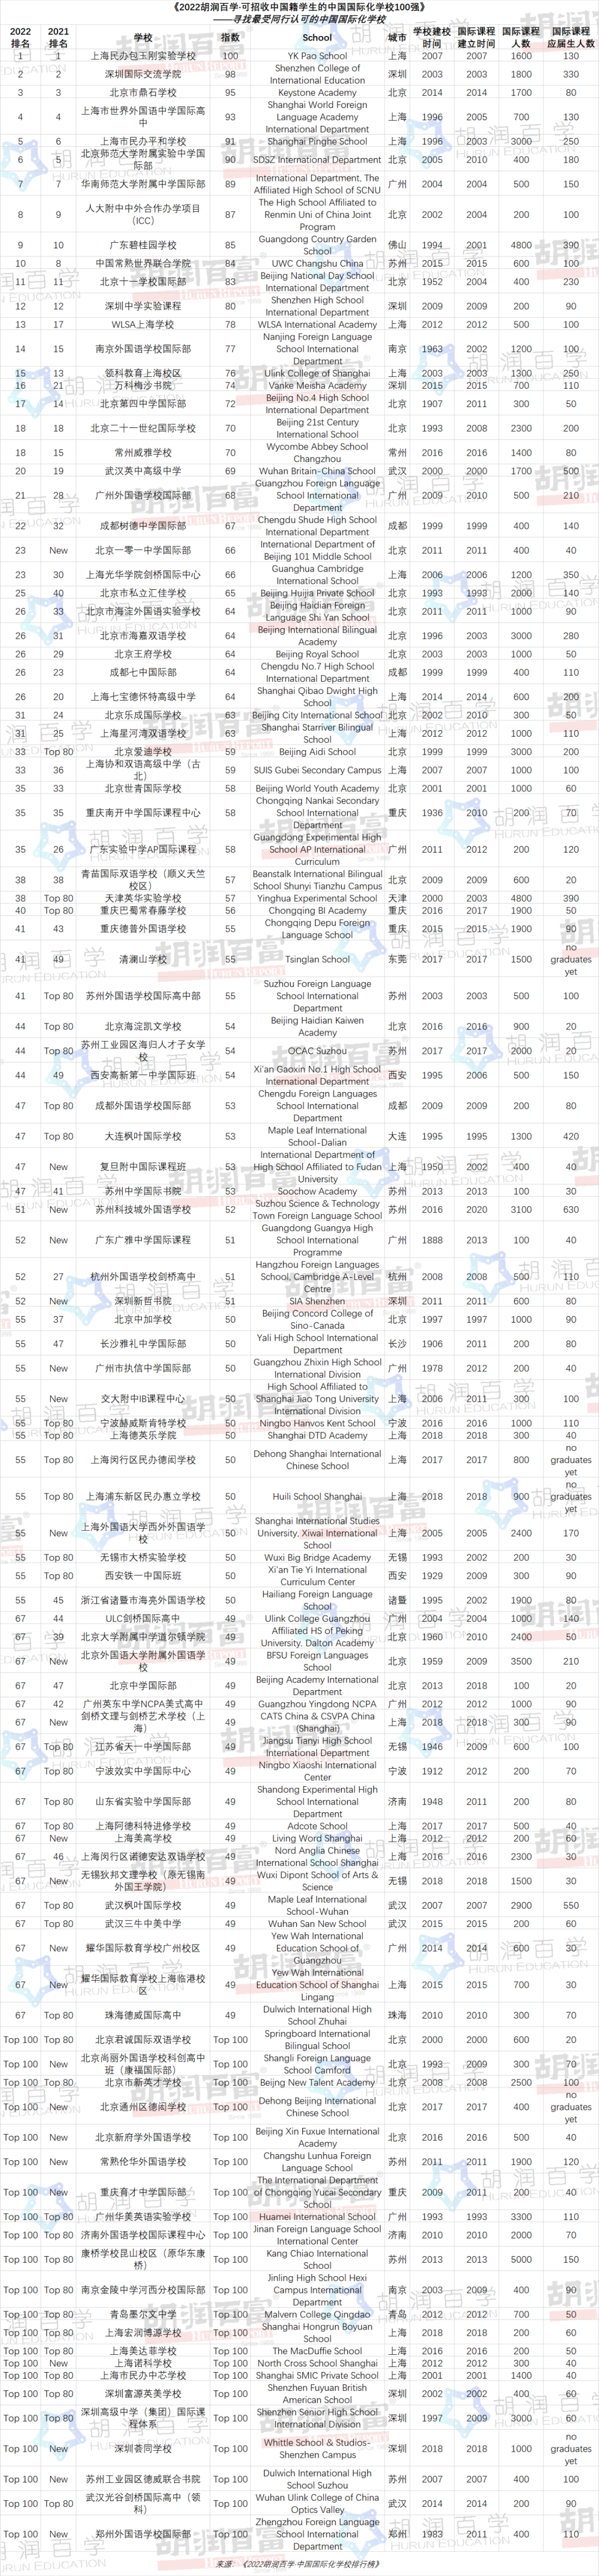 2022胡润百学·中国国际化学校排行榜出炉！深国交第二、贝赛思2校上榜…